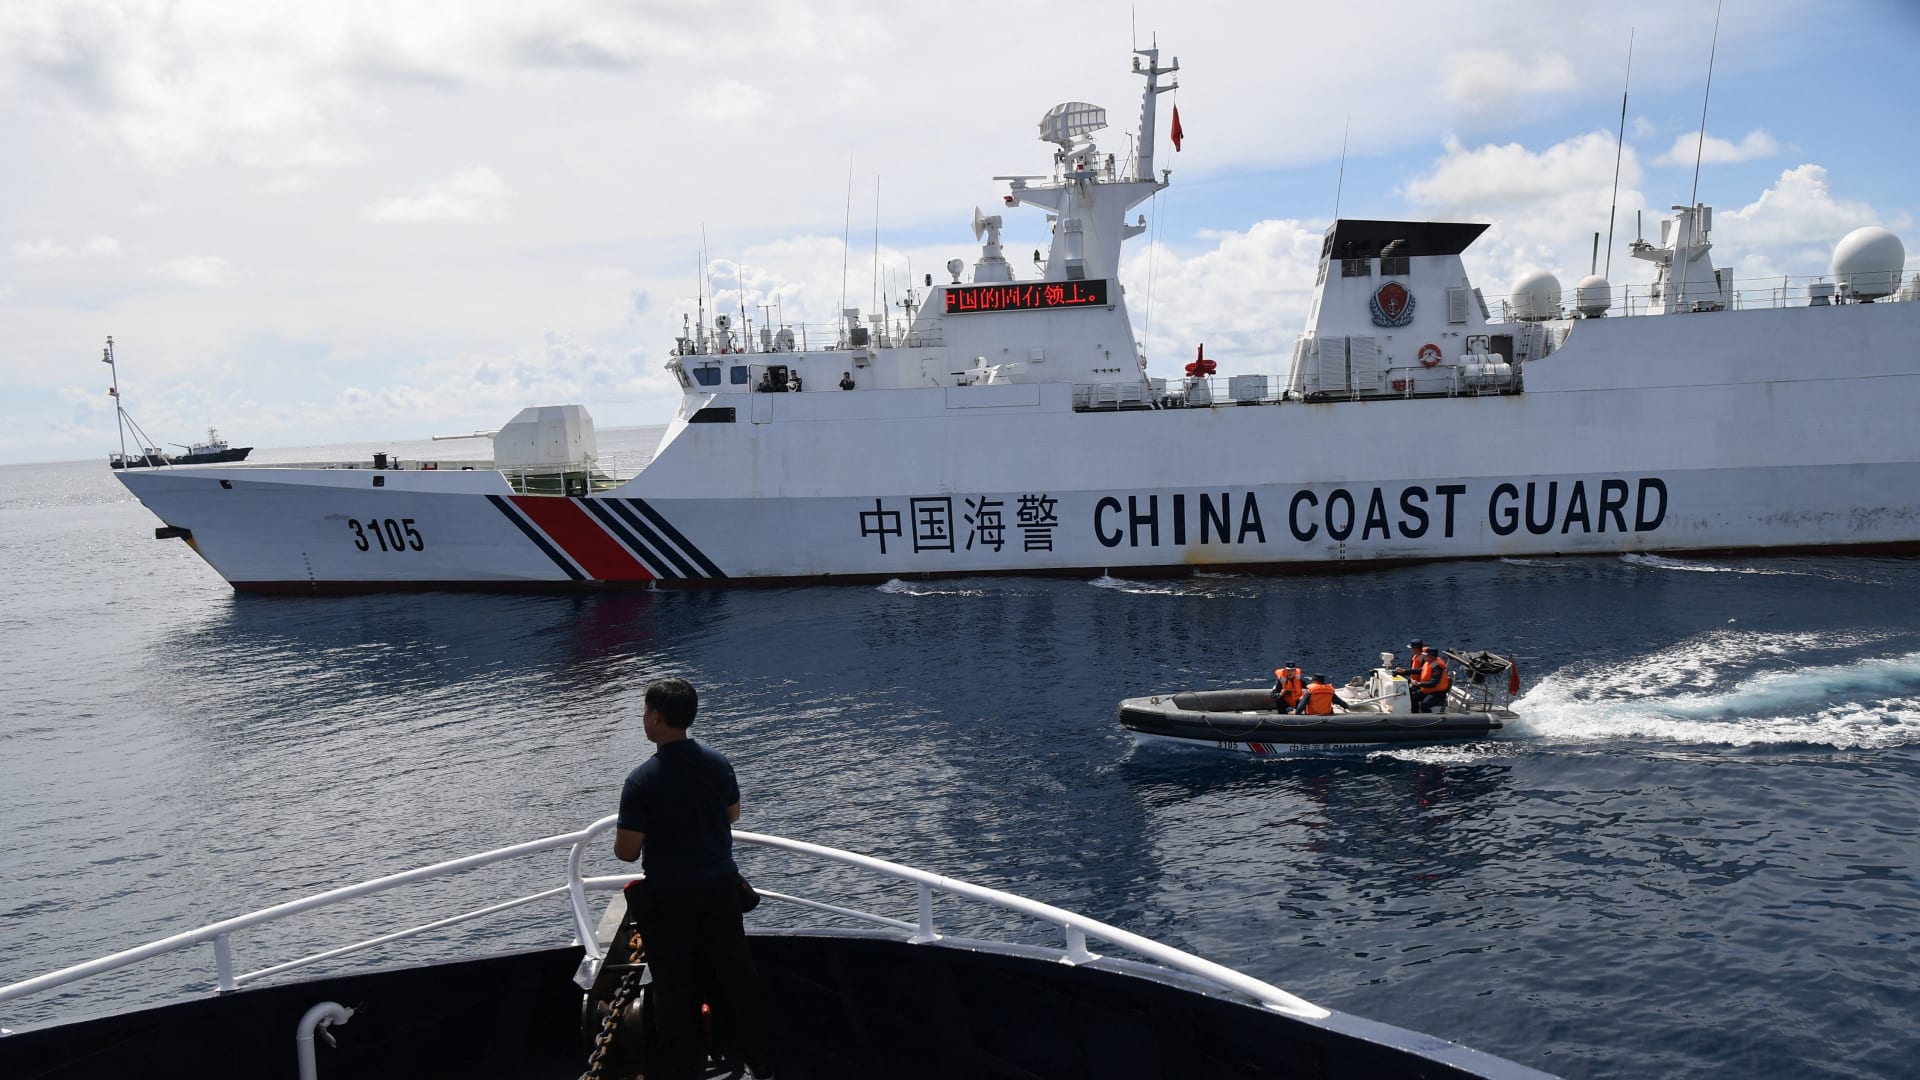 فيديو يظهر لحظة مواجهة خطيرة بين سفينة صينية وزوارق فلبينية في البحر.. شاهد ما حدث